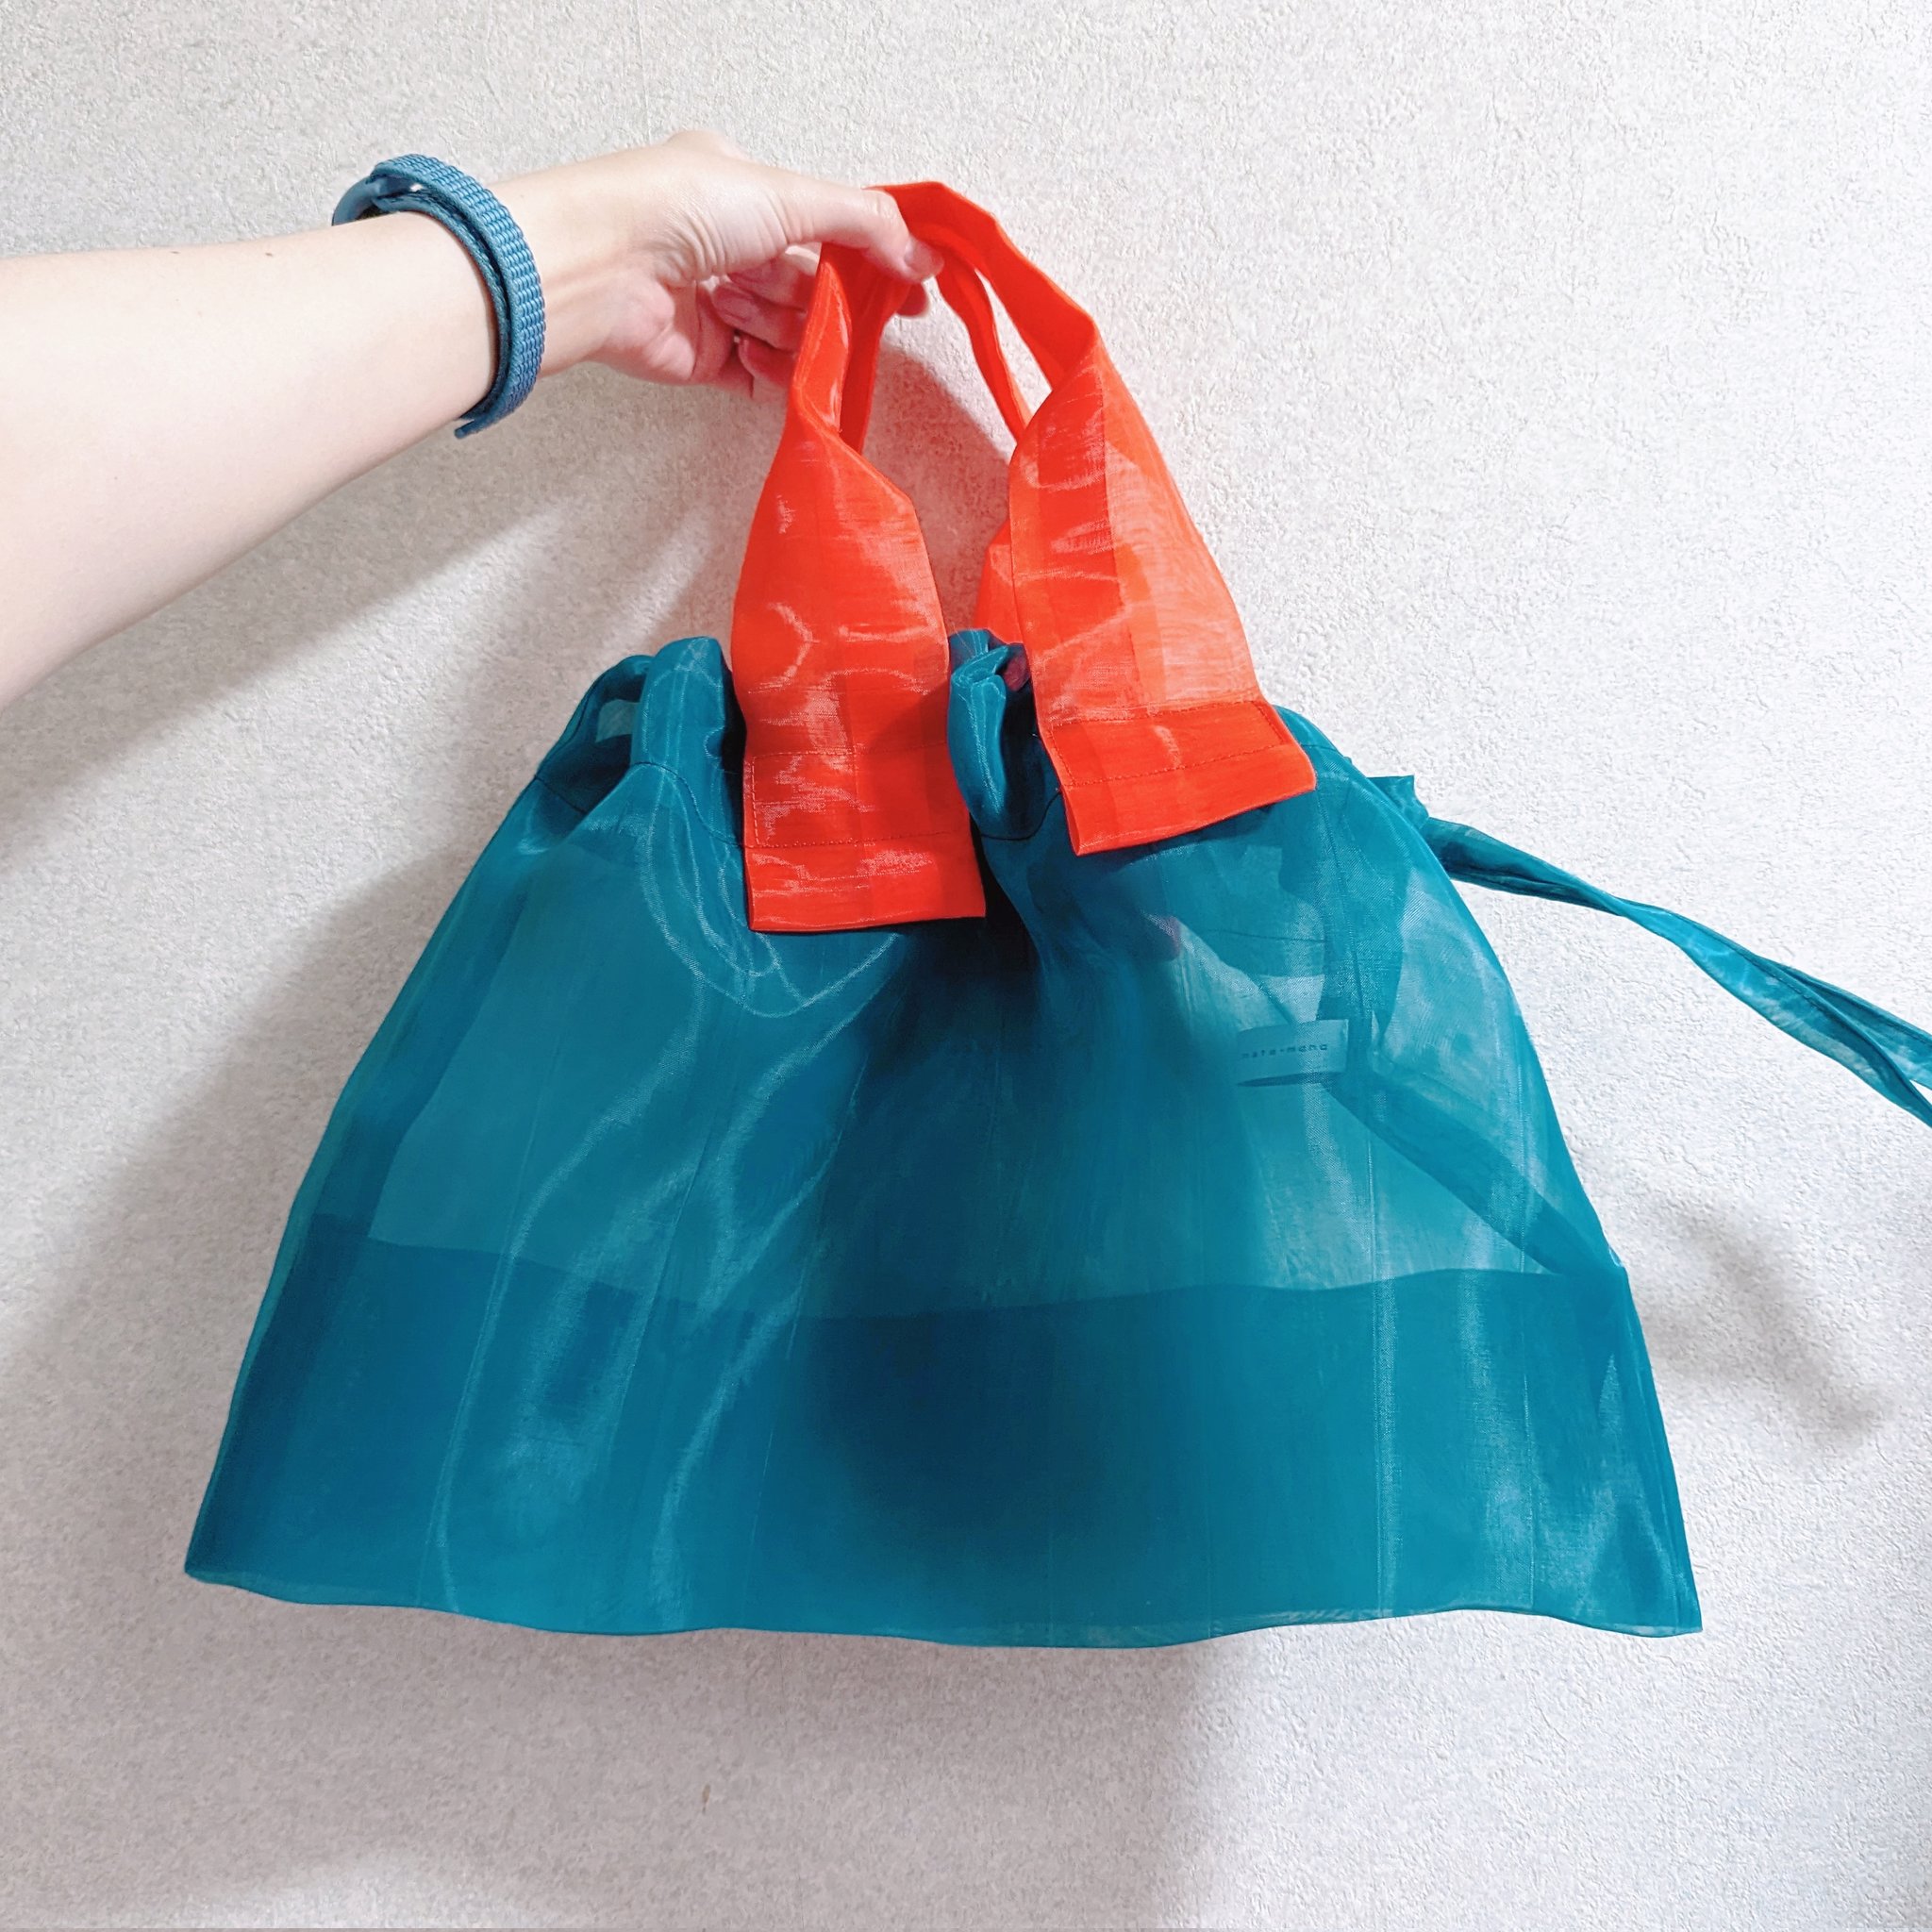 小松マテーレのすけるバッグマルチカラーを持ってる写真。カバン本体はピーコックカラーで、持ち手は鮮やかなオレンジ。